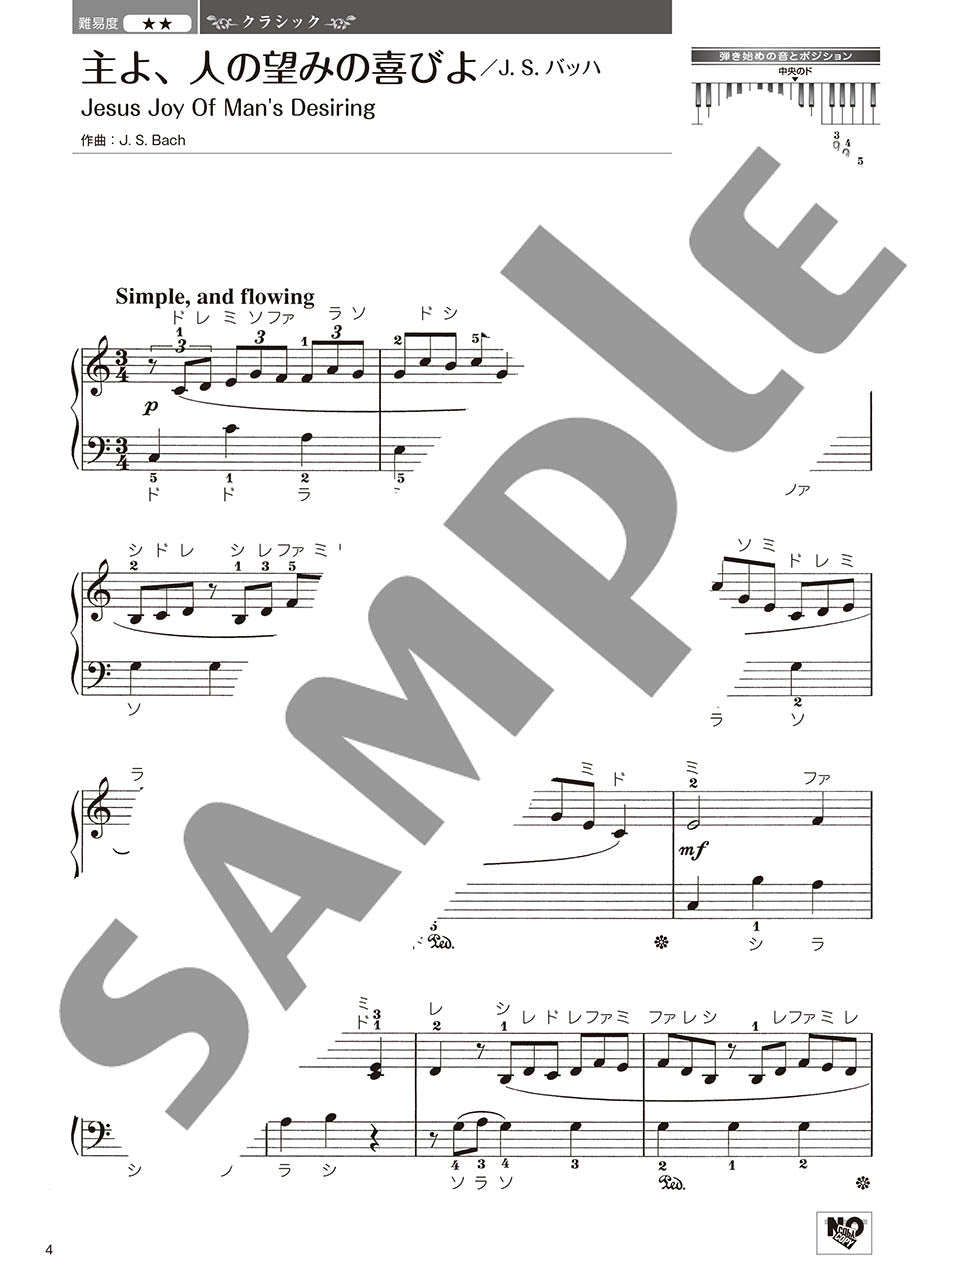 やさしく弾ける 大人のためのピアノレパートリー60 Vol.2_2